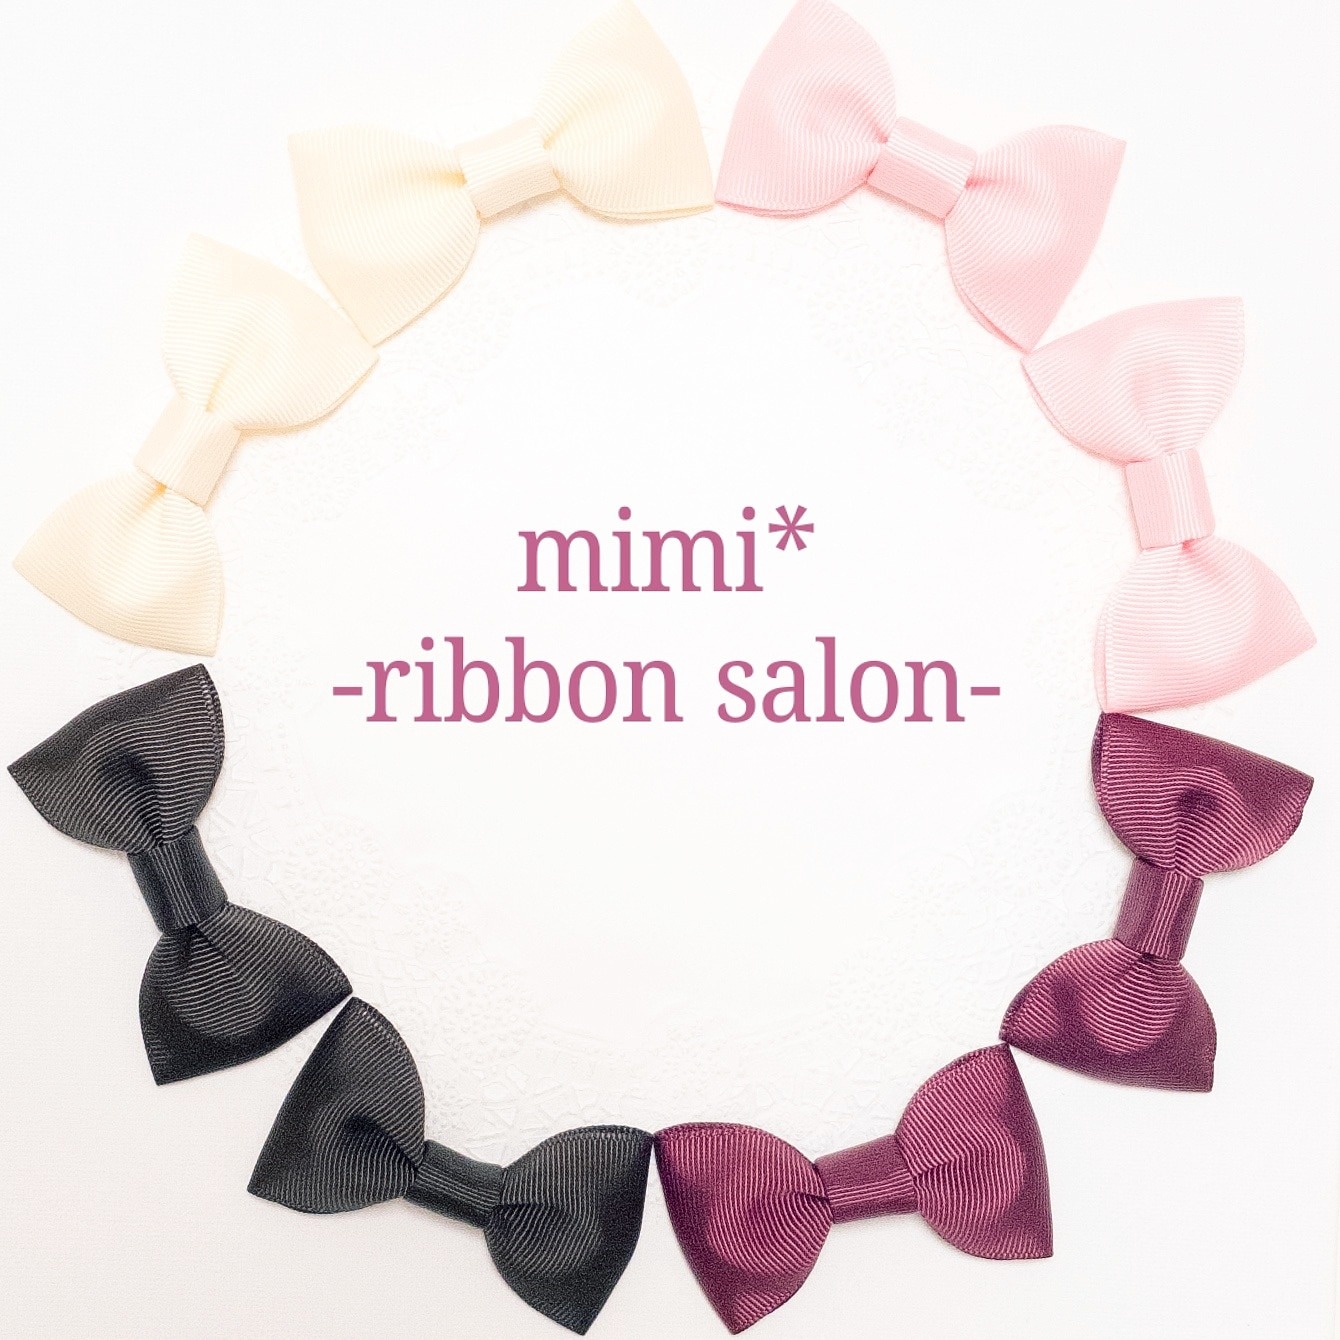 mimi* -ribbon salon-